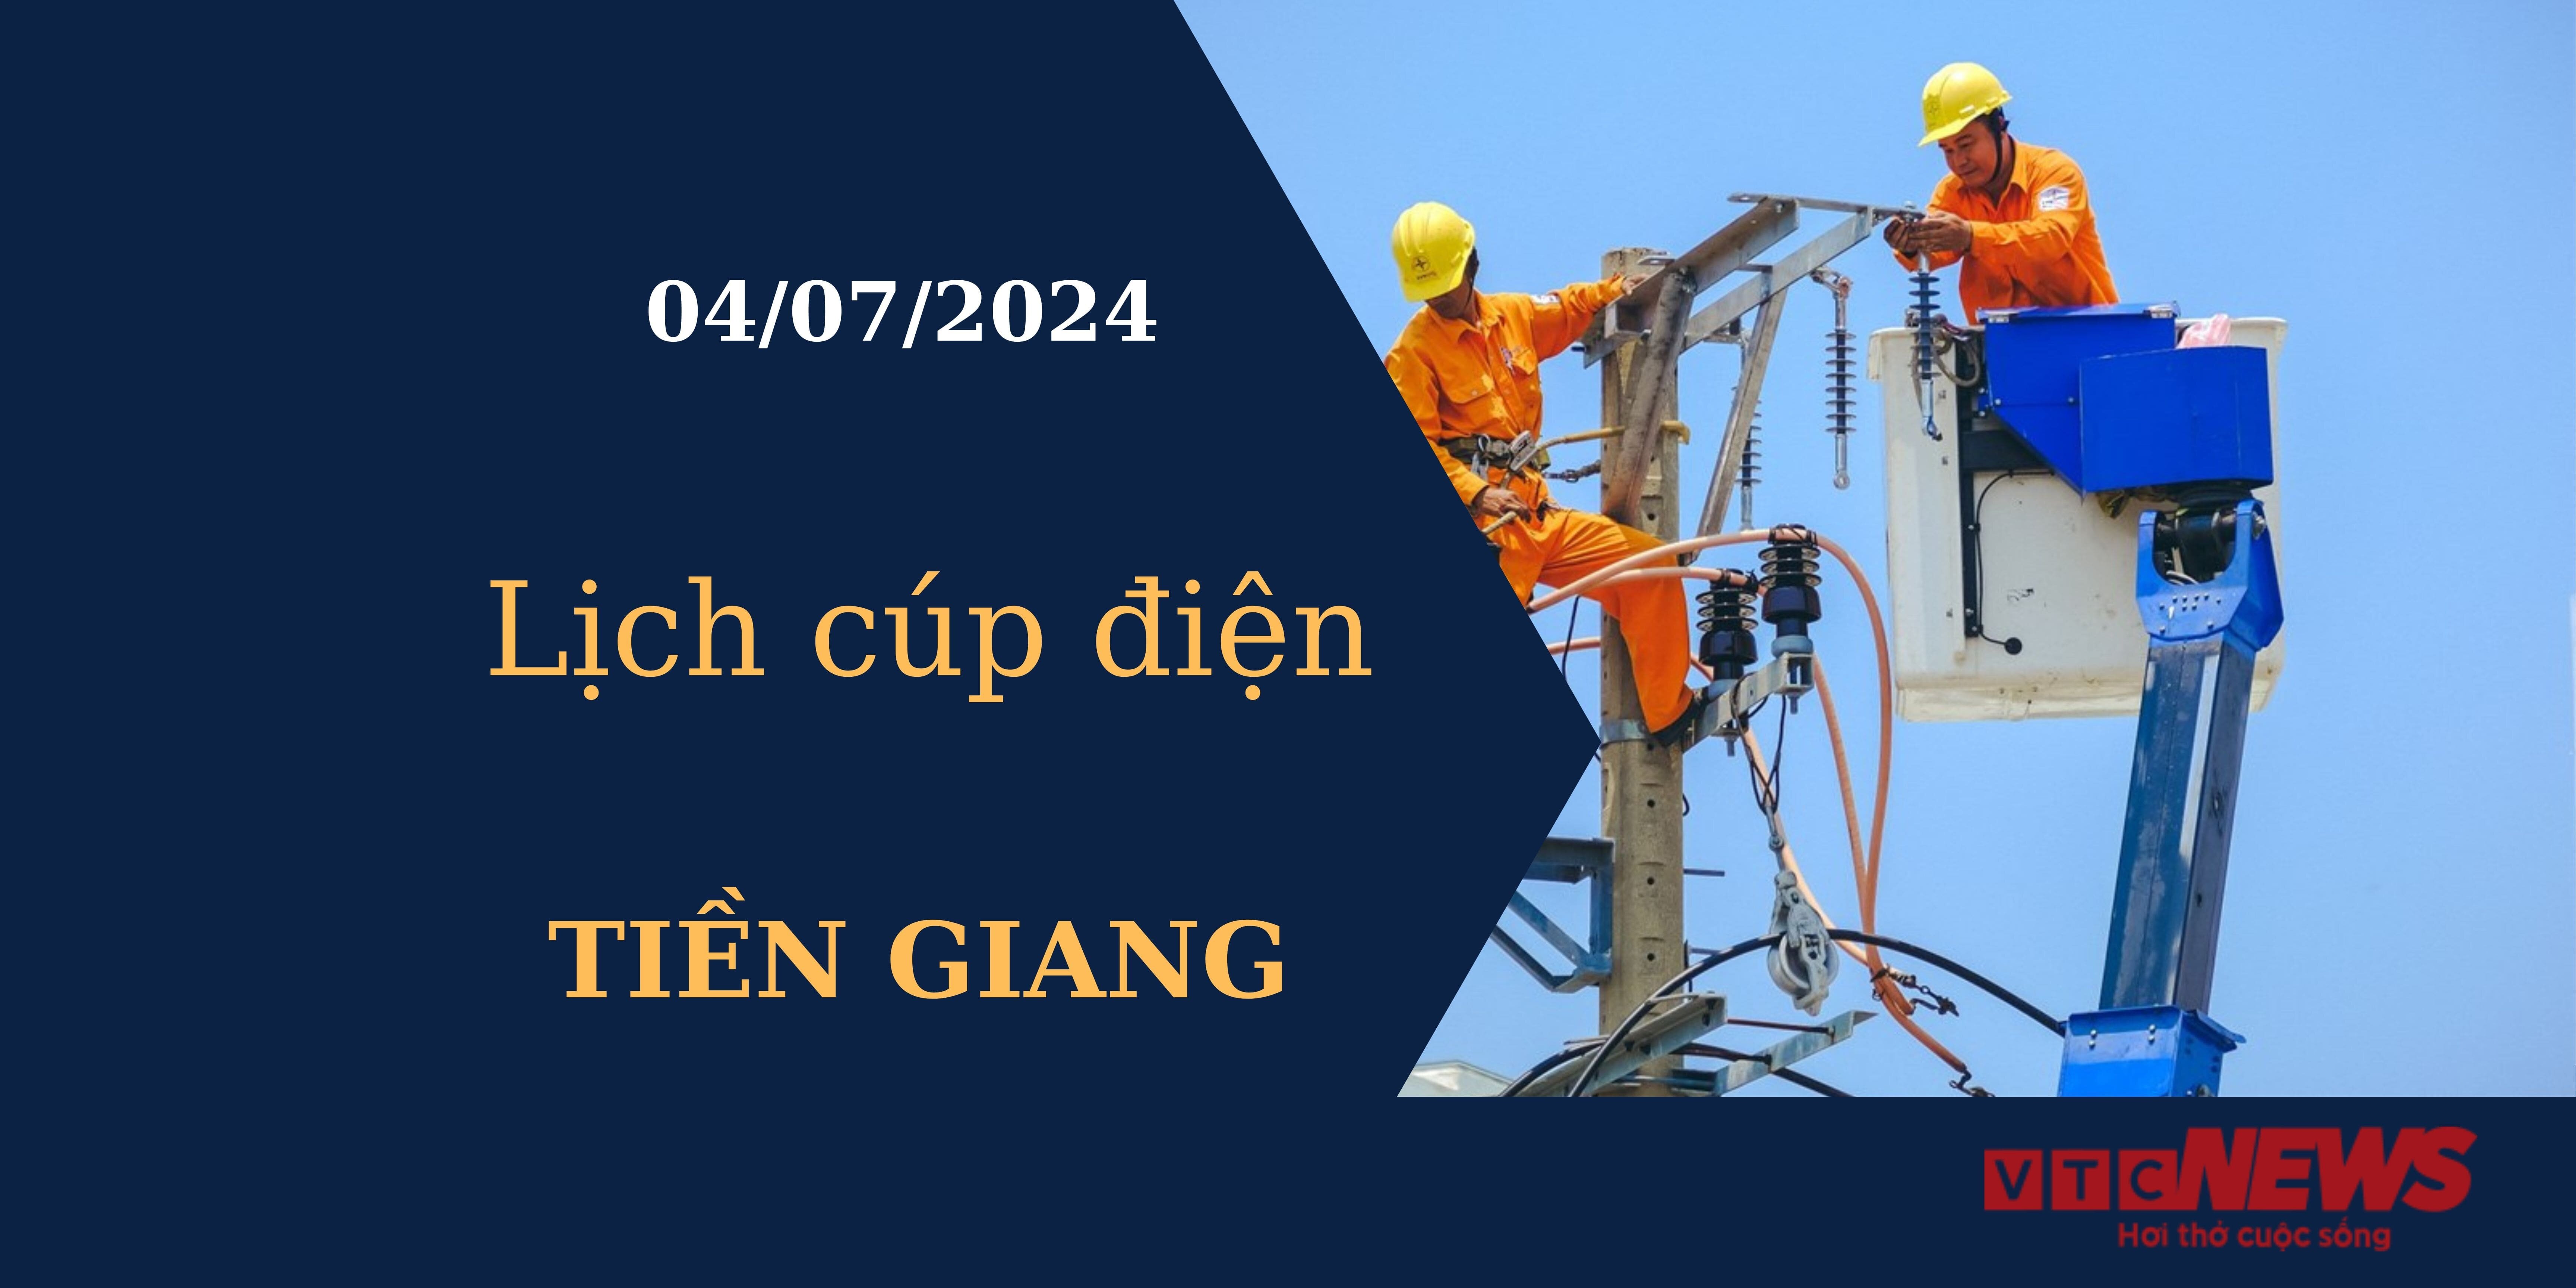 Lịch cúp điện hôm nay tại Tiền Giang ngày 04/07/2024